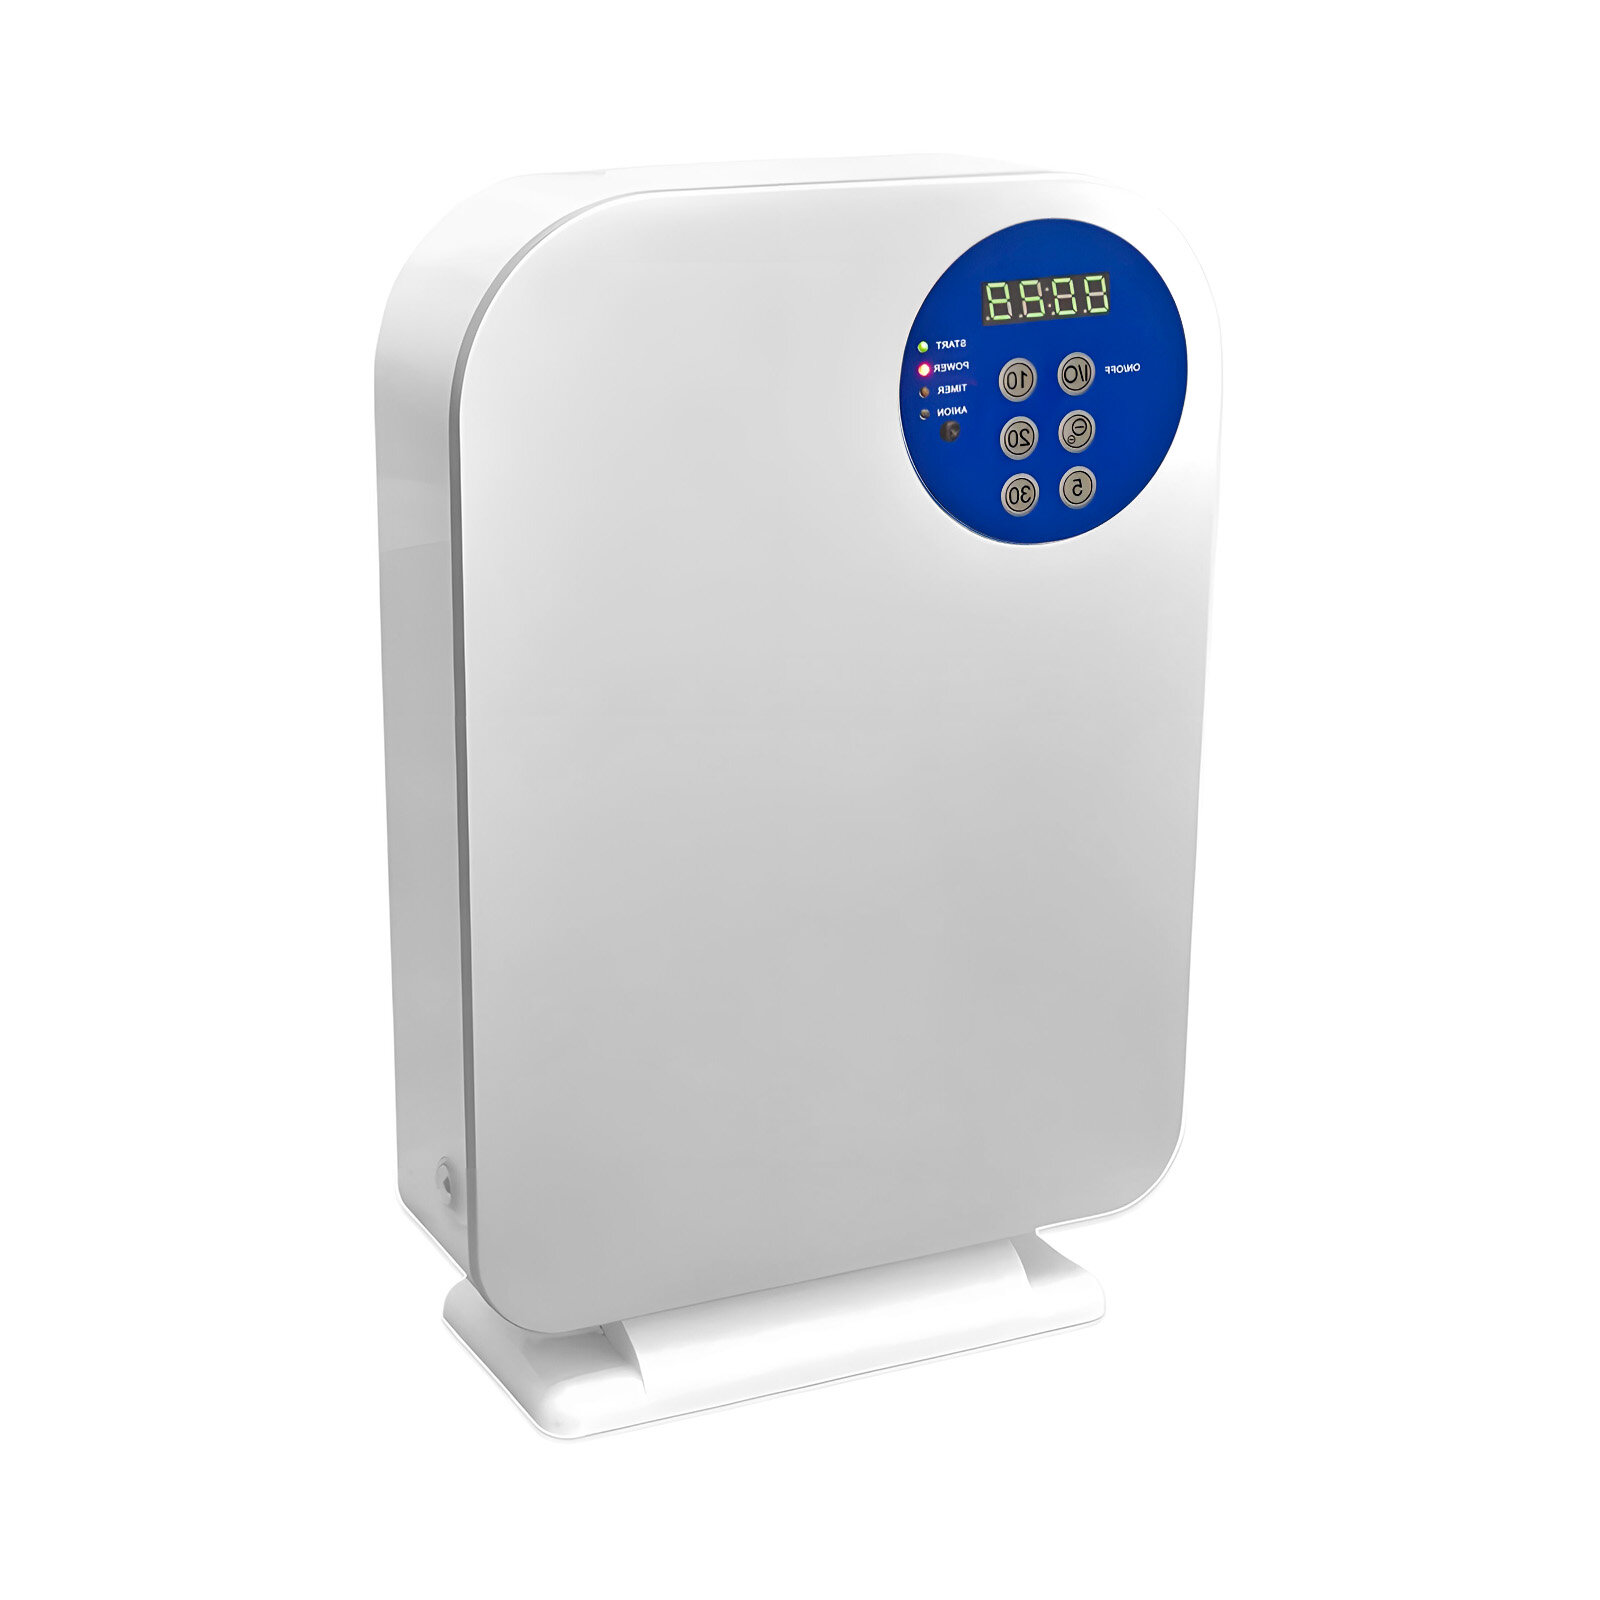 Озонирование и ионизирование воздуха в помещении HD com Mod:RMD (A2) (Q23695OZO) для квартиры, дома и для воды. Дезинфекция от клопов озонатором.